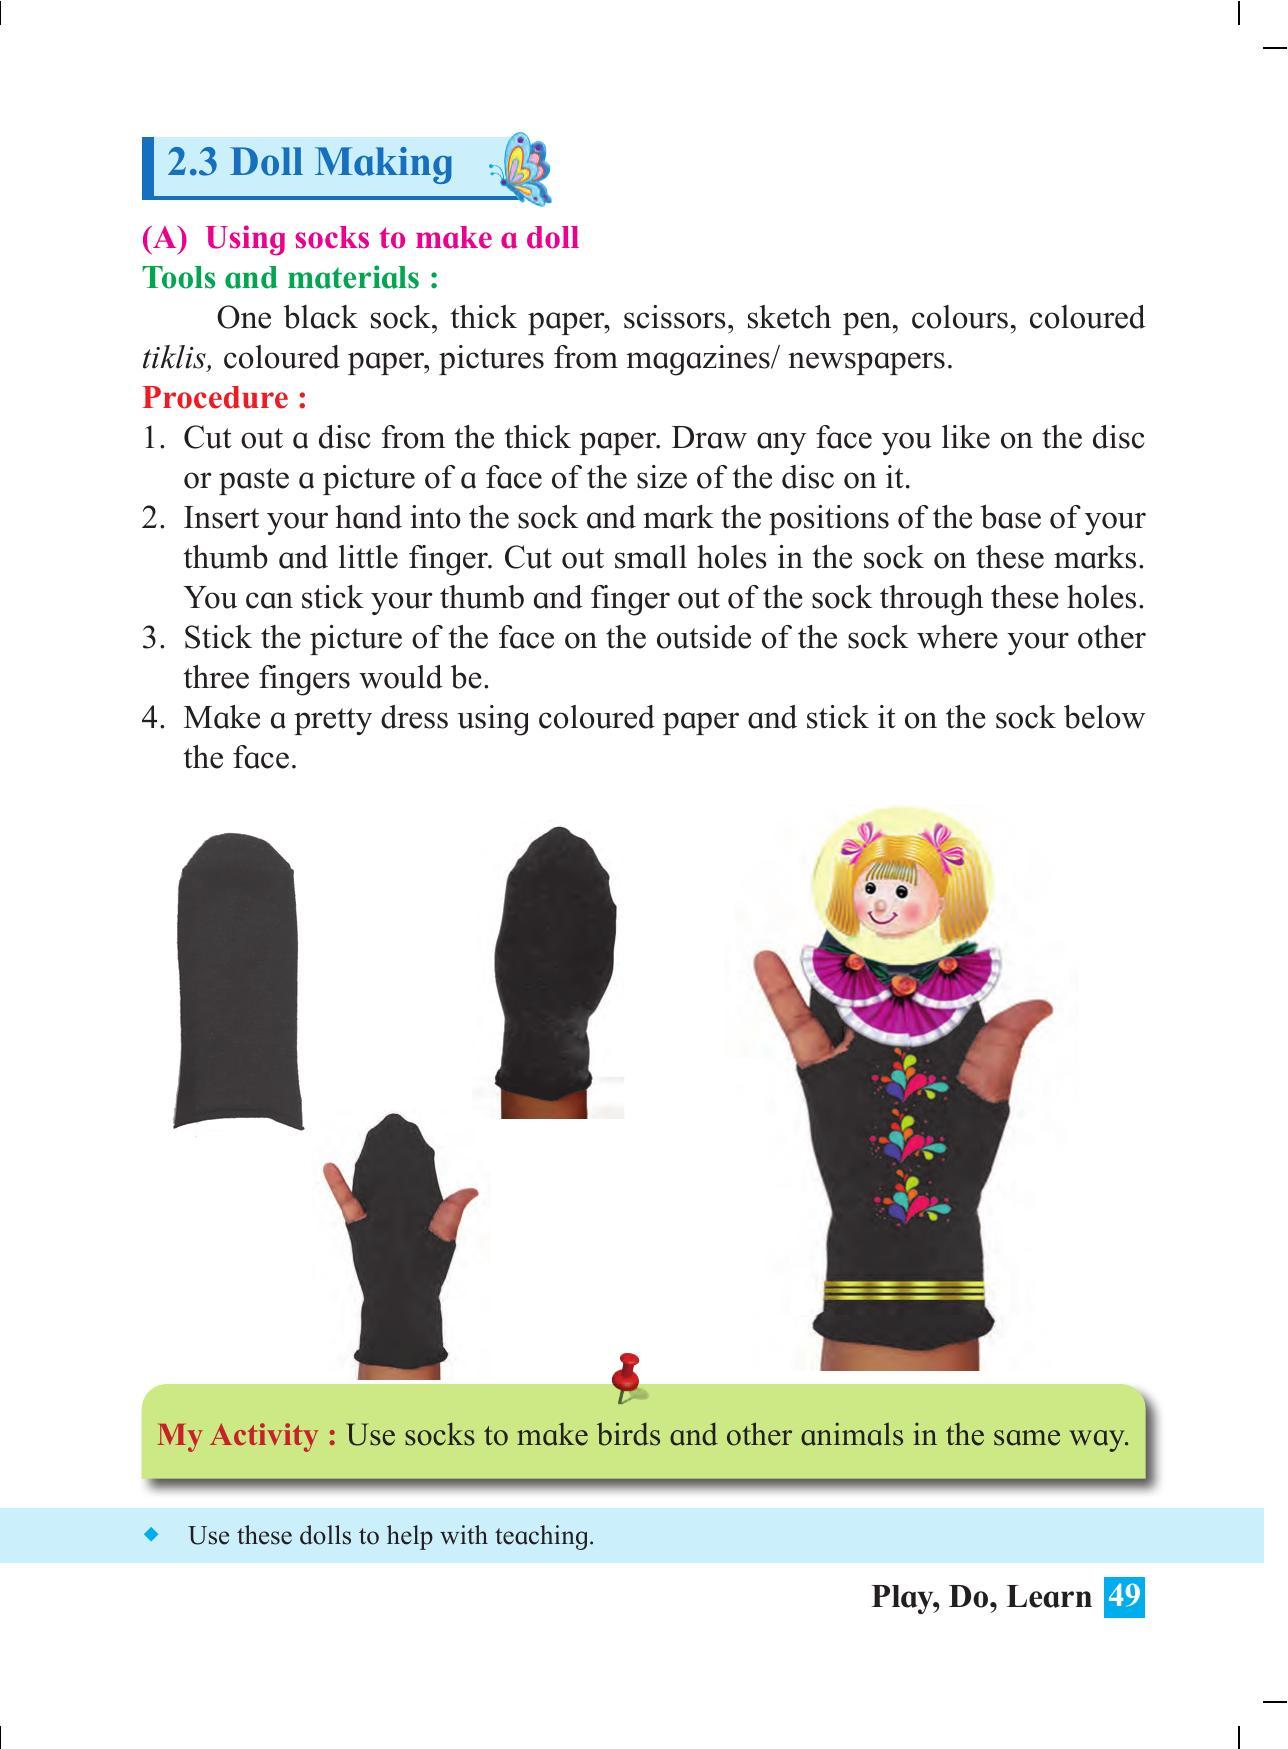 Maharashtra Board Class 4 Play Do Learn (English Medium) Textbook - Page 58